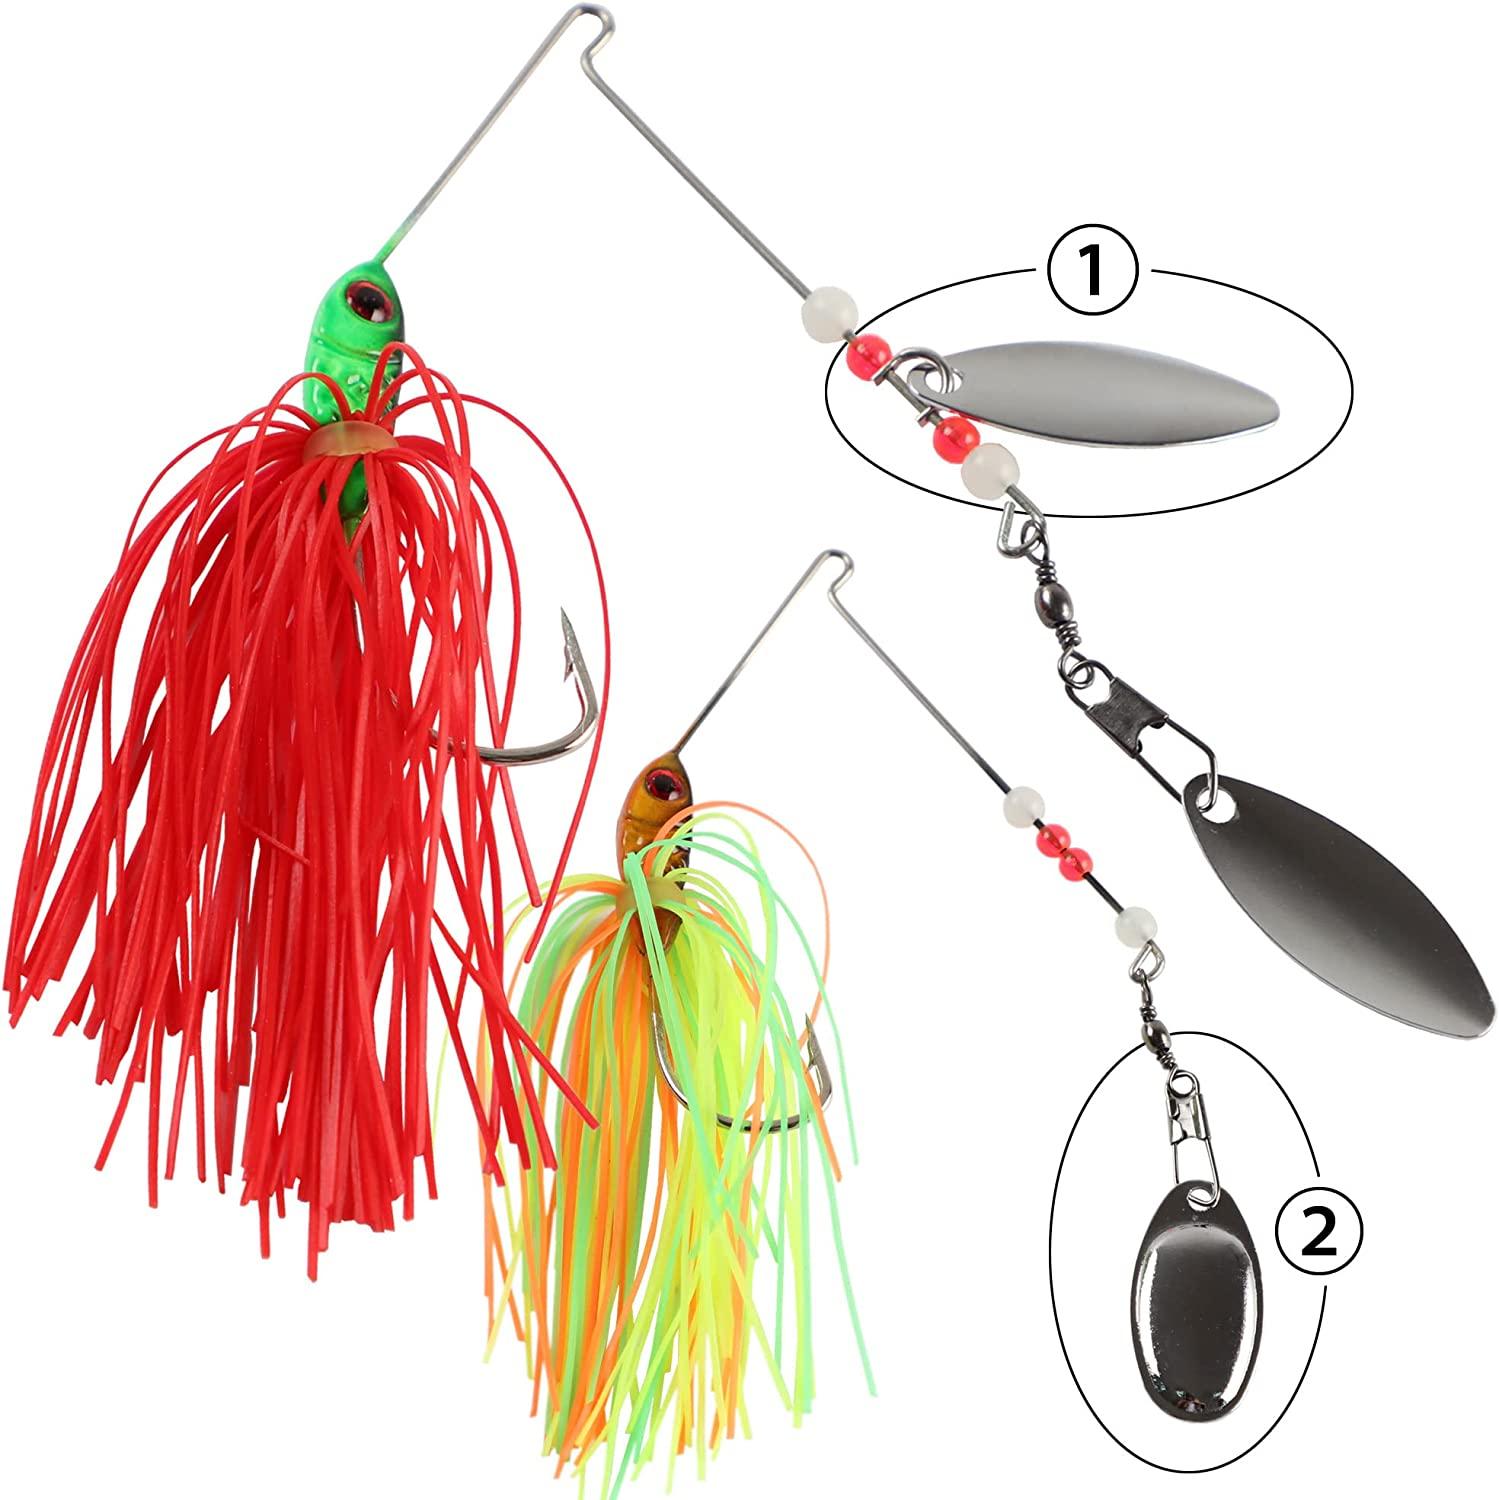 Bass Spinner Baits,6 Pcs Fishing Lures Spinner Baits,Spinner Baits